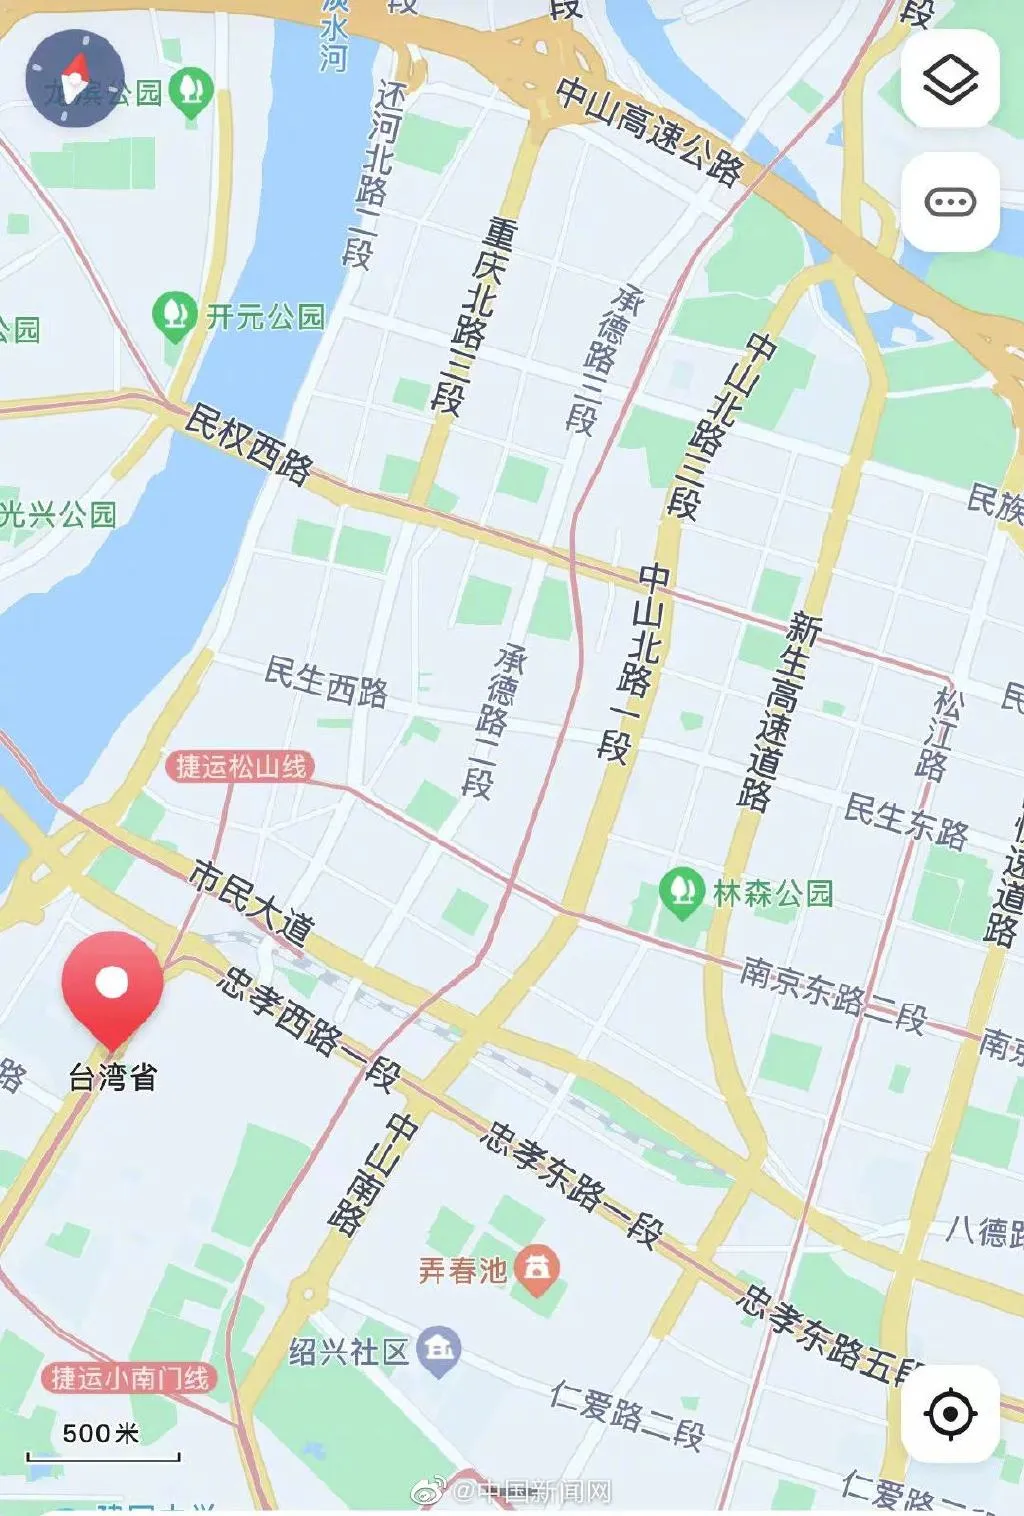 地图可显示台湾省每个街道的名称 台湾省街道用大陆城市命名